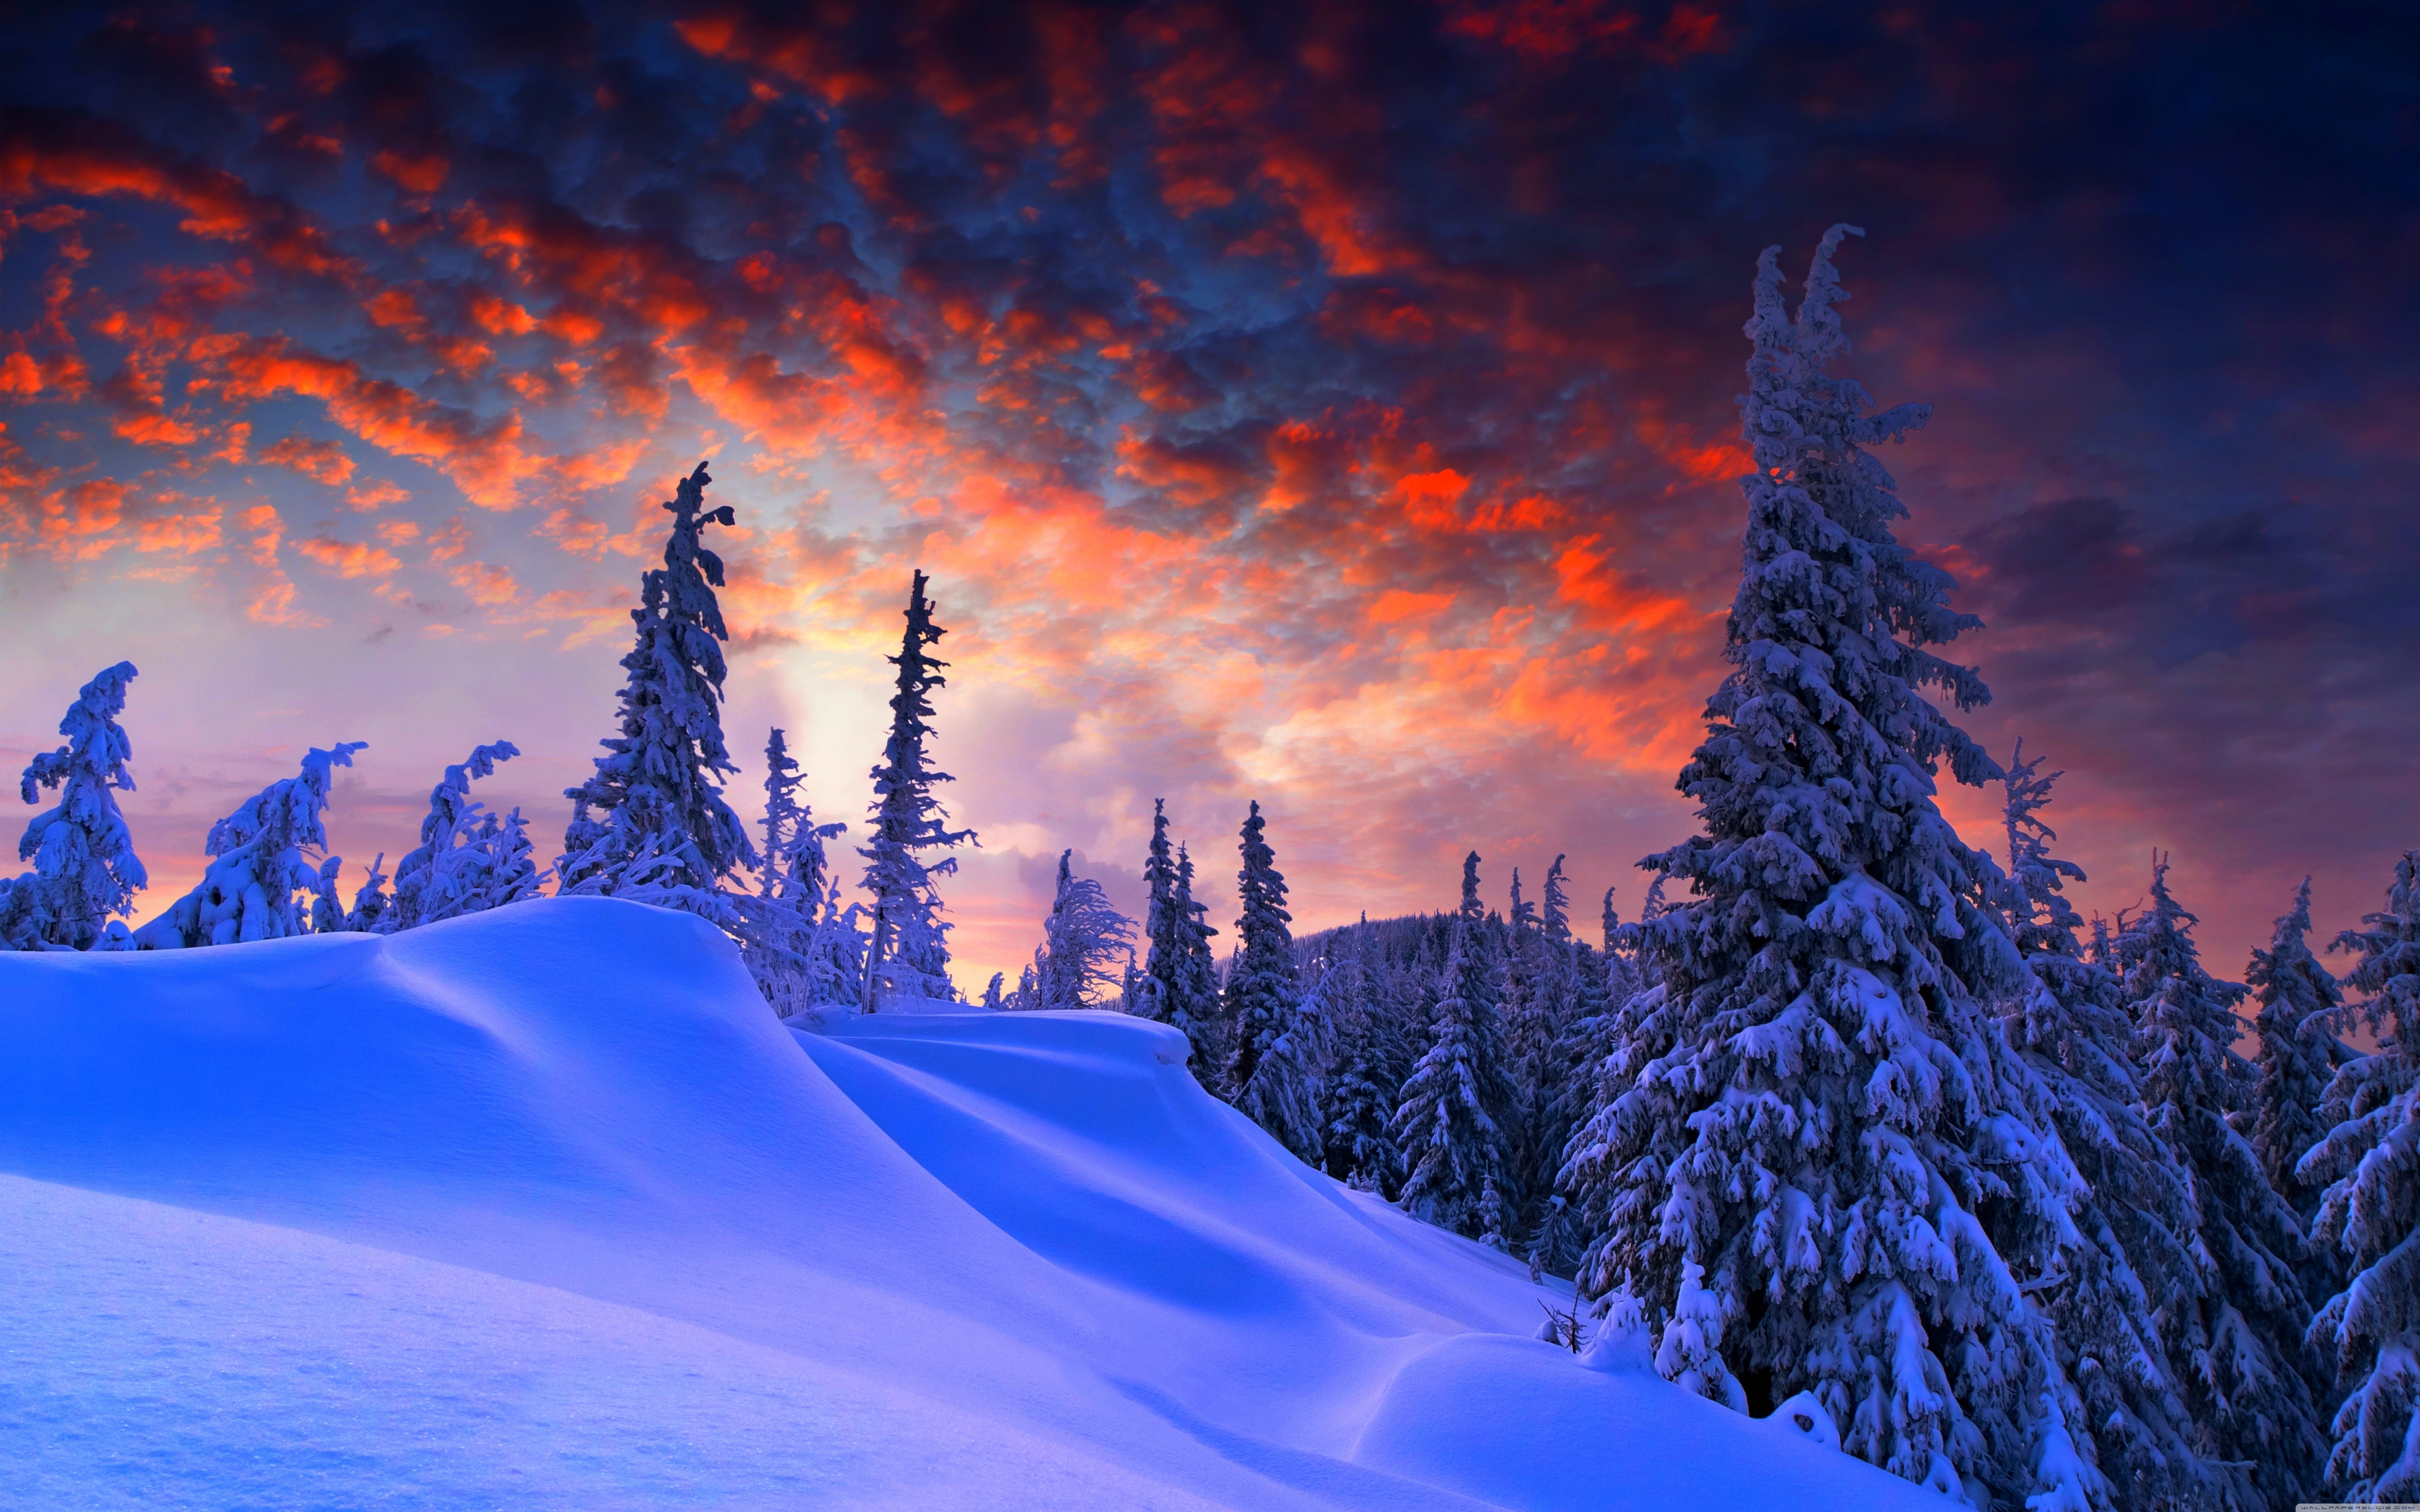 Скачать обои бесплатно Зима, Снег, Дерево, Вечер, Земля/природа картинка на рабочий стол ПК